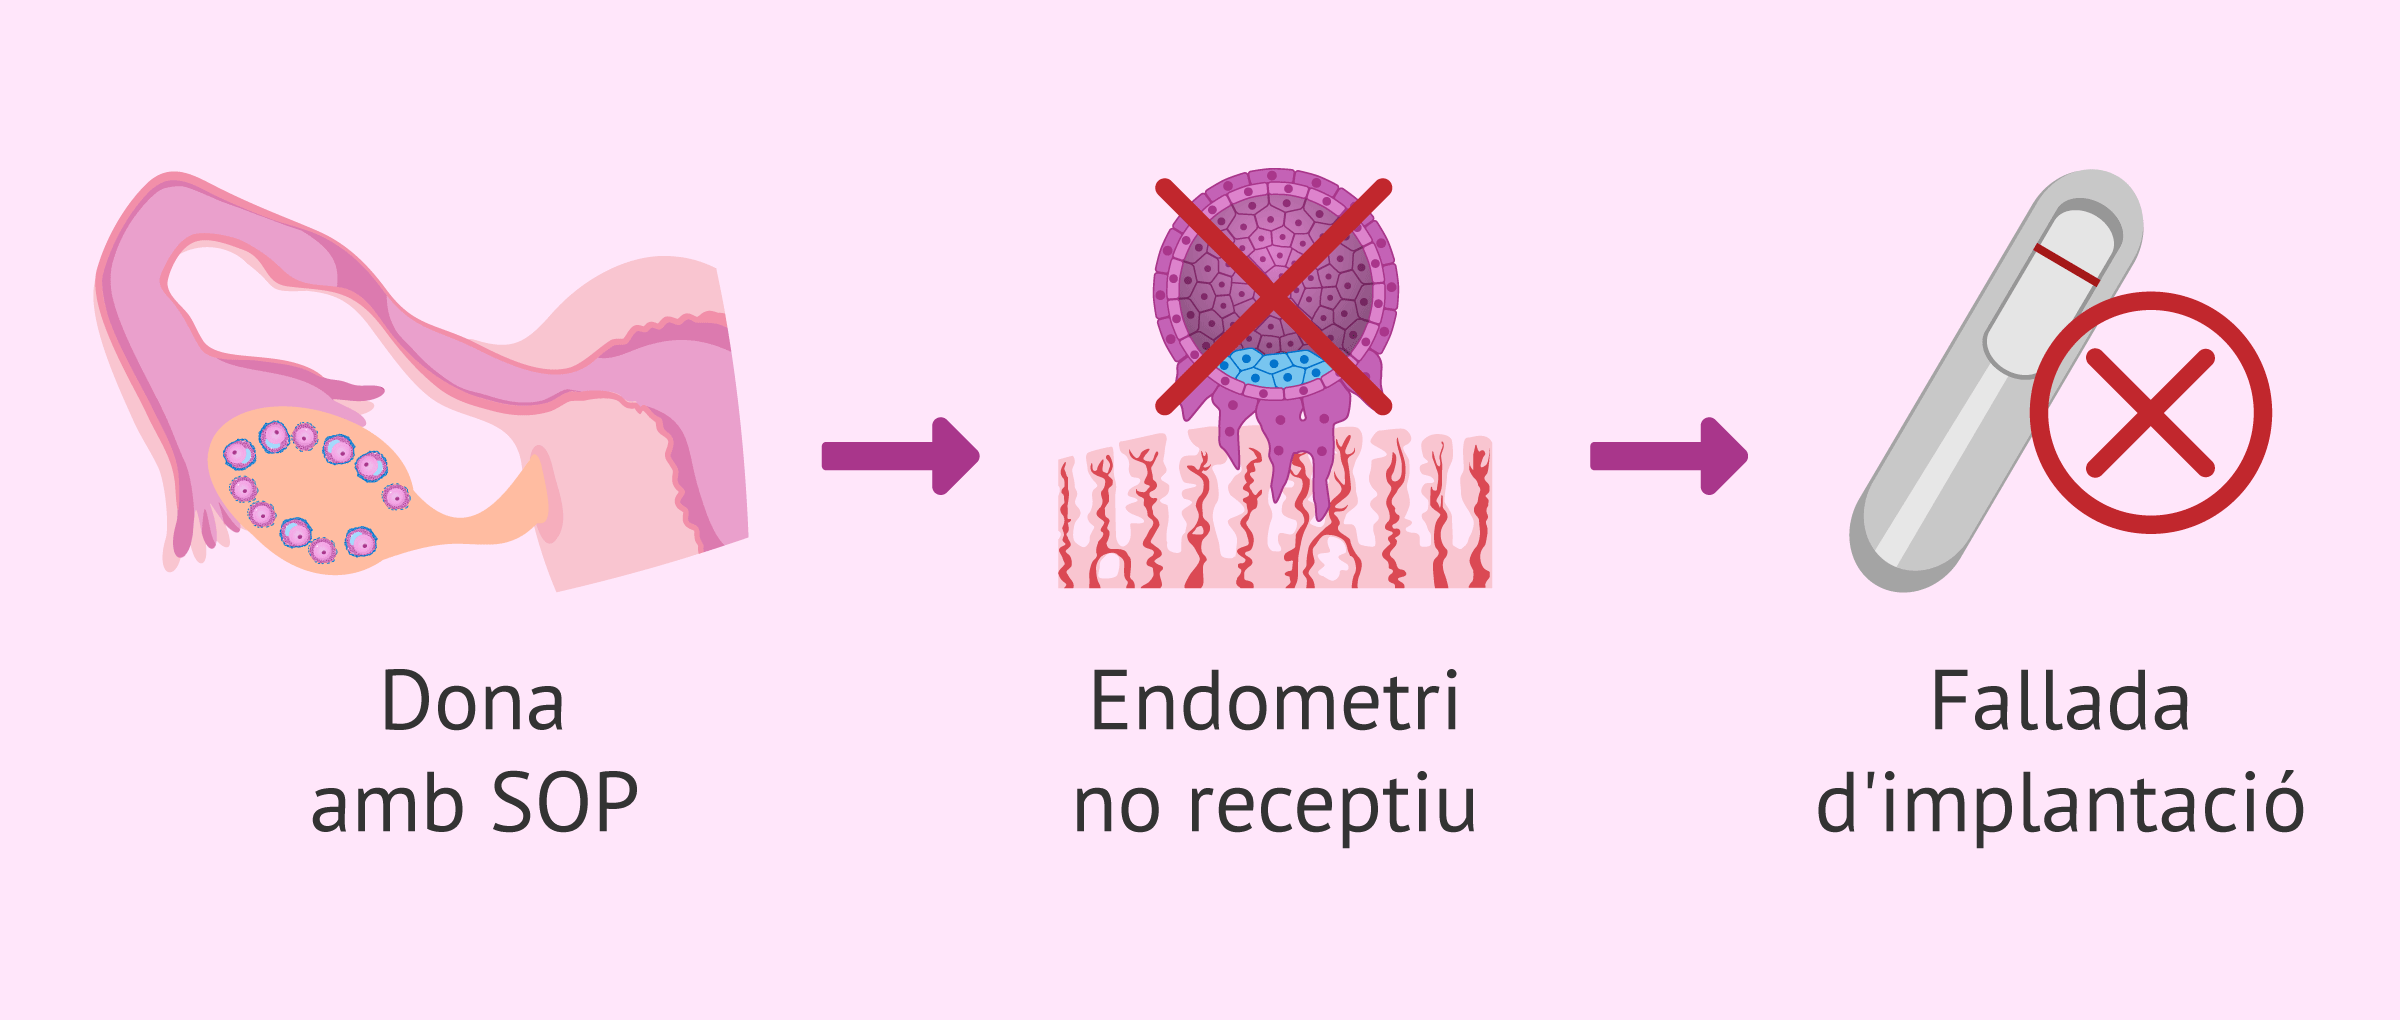 Les dones amb SOP tenen endometri receptiu?